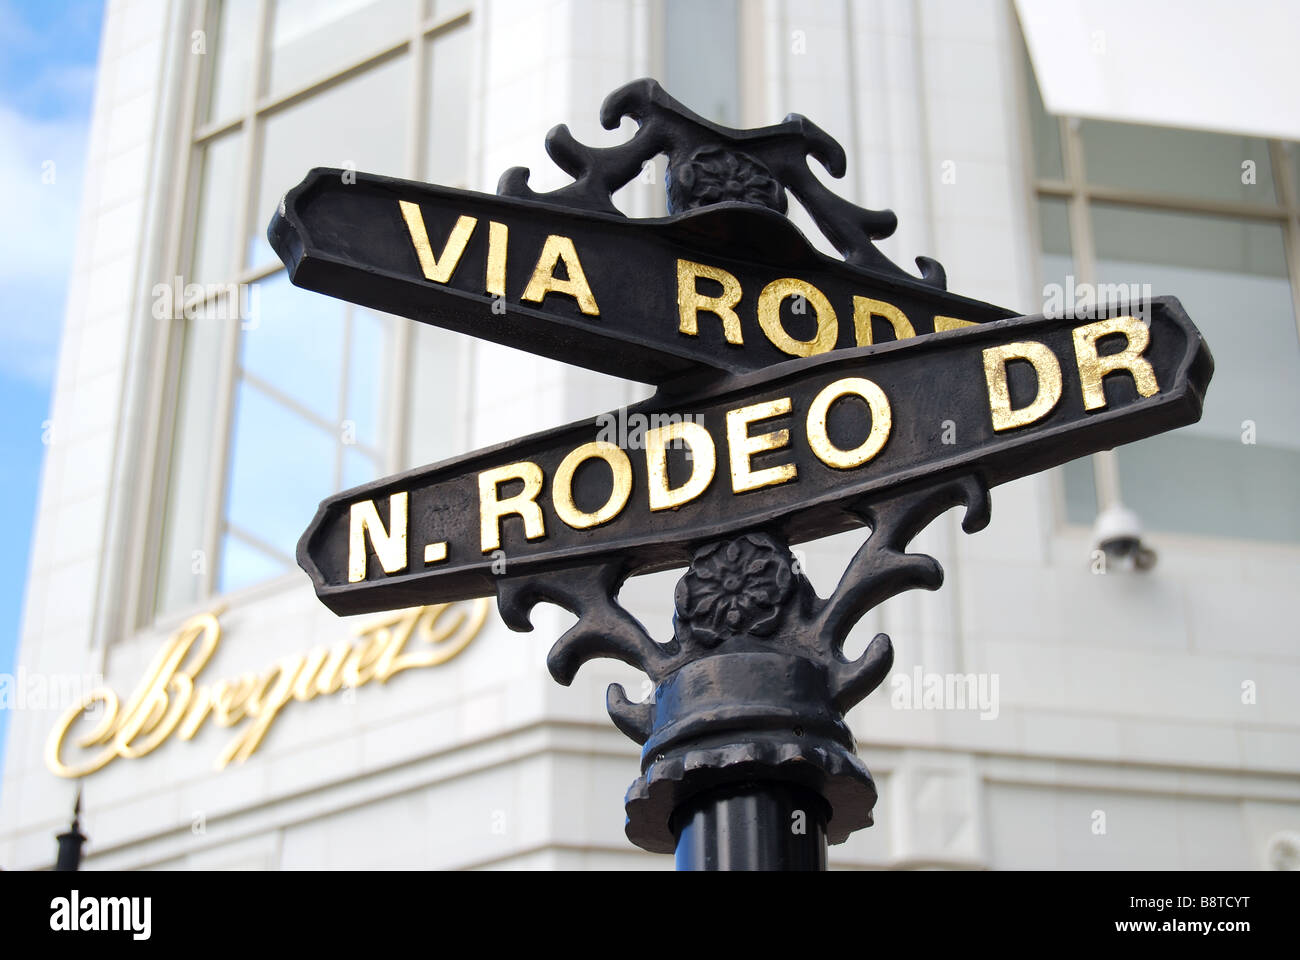 Straßenschilder, Rodeo Drive, Beverly Hills, Los Angeles, Kalifornien, Vereinigte Staaten von Amerika Stockfoto